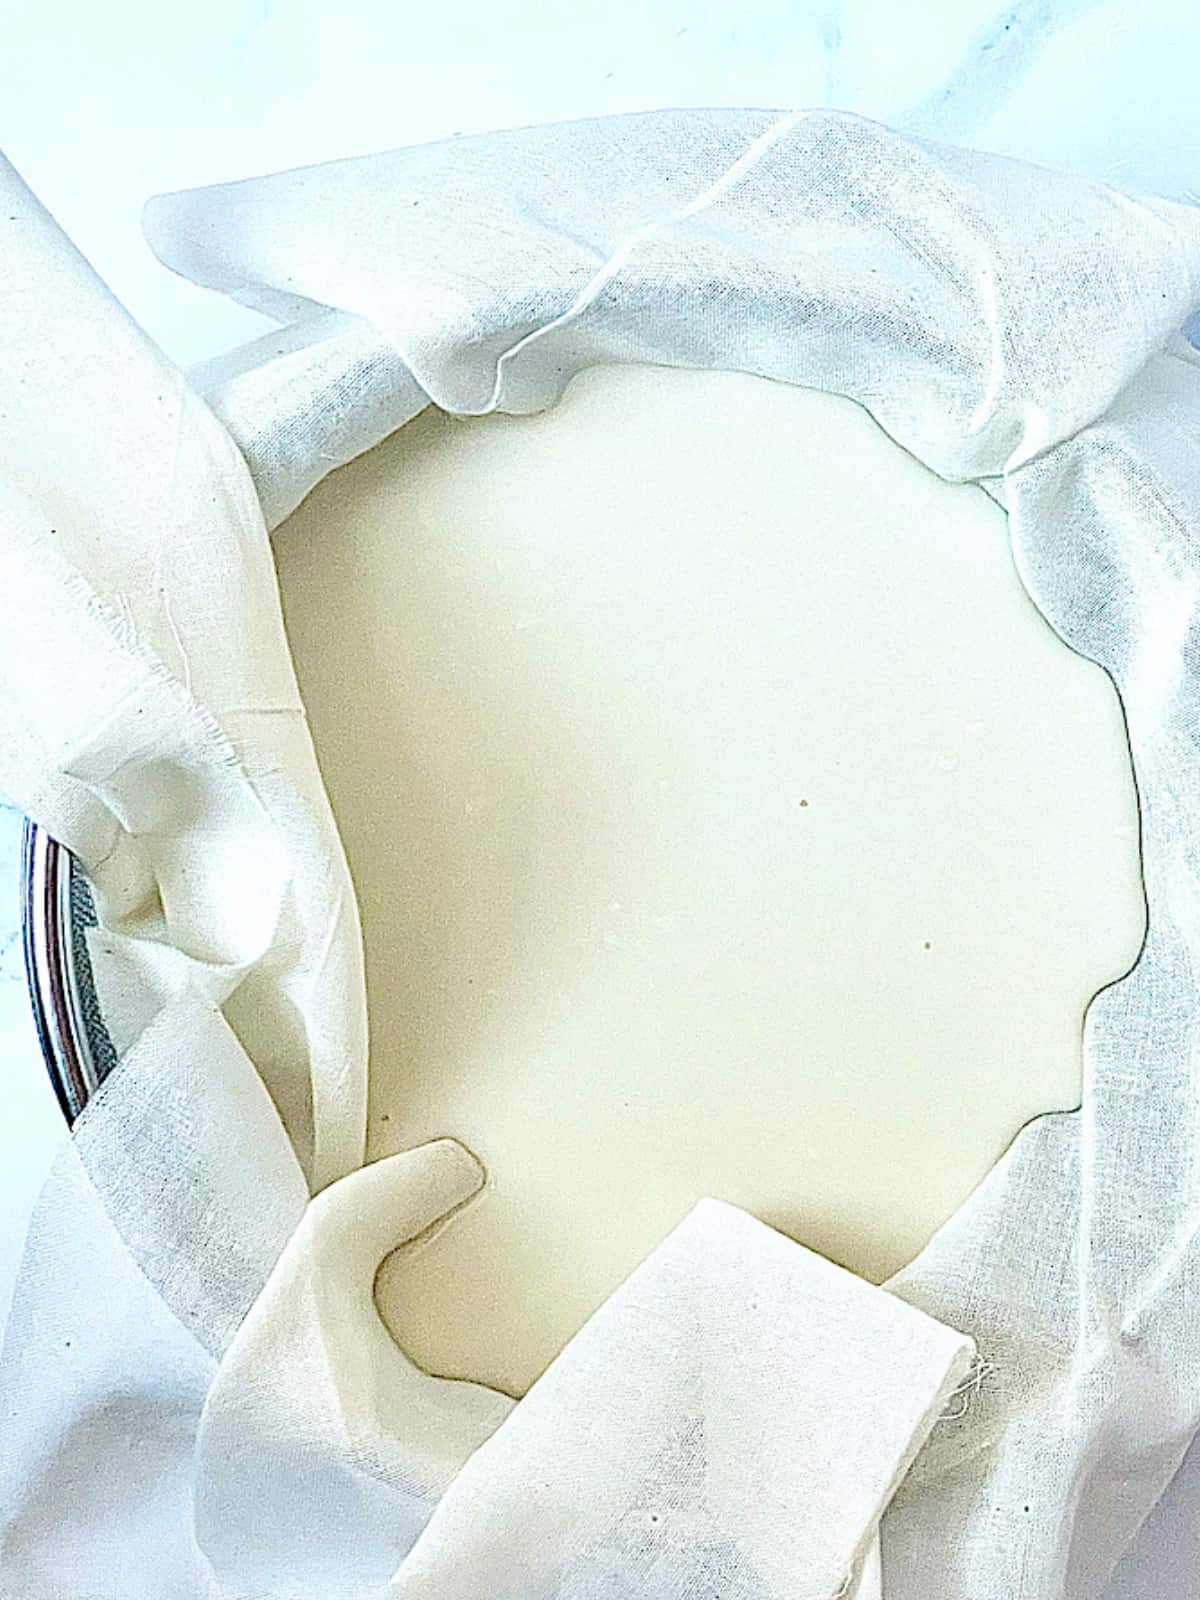 yogurt straining in a cheesecloth